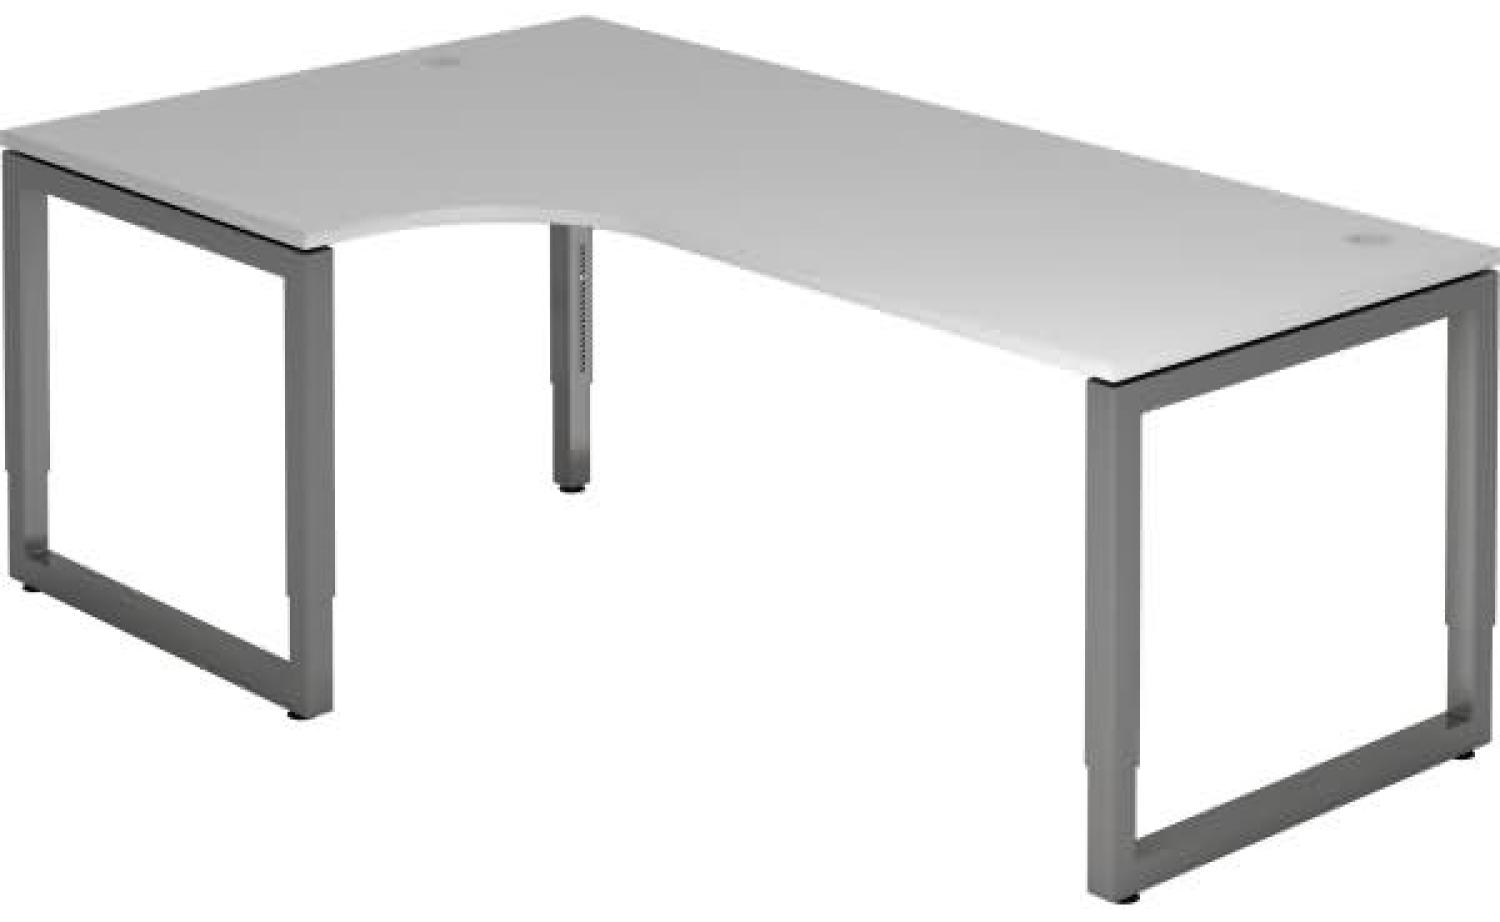 Winkeltisch O-Fuß eckig 200x120cm Grau / Graphit Bild 1